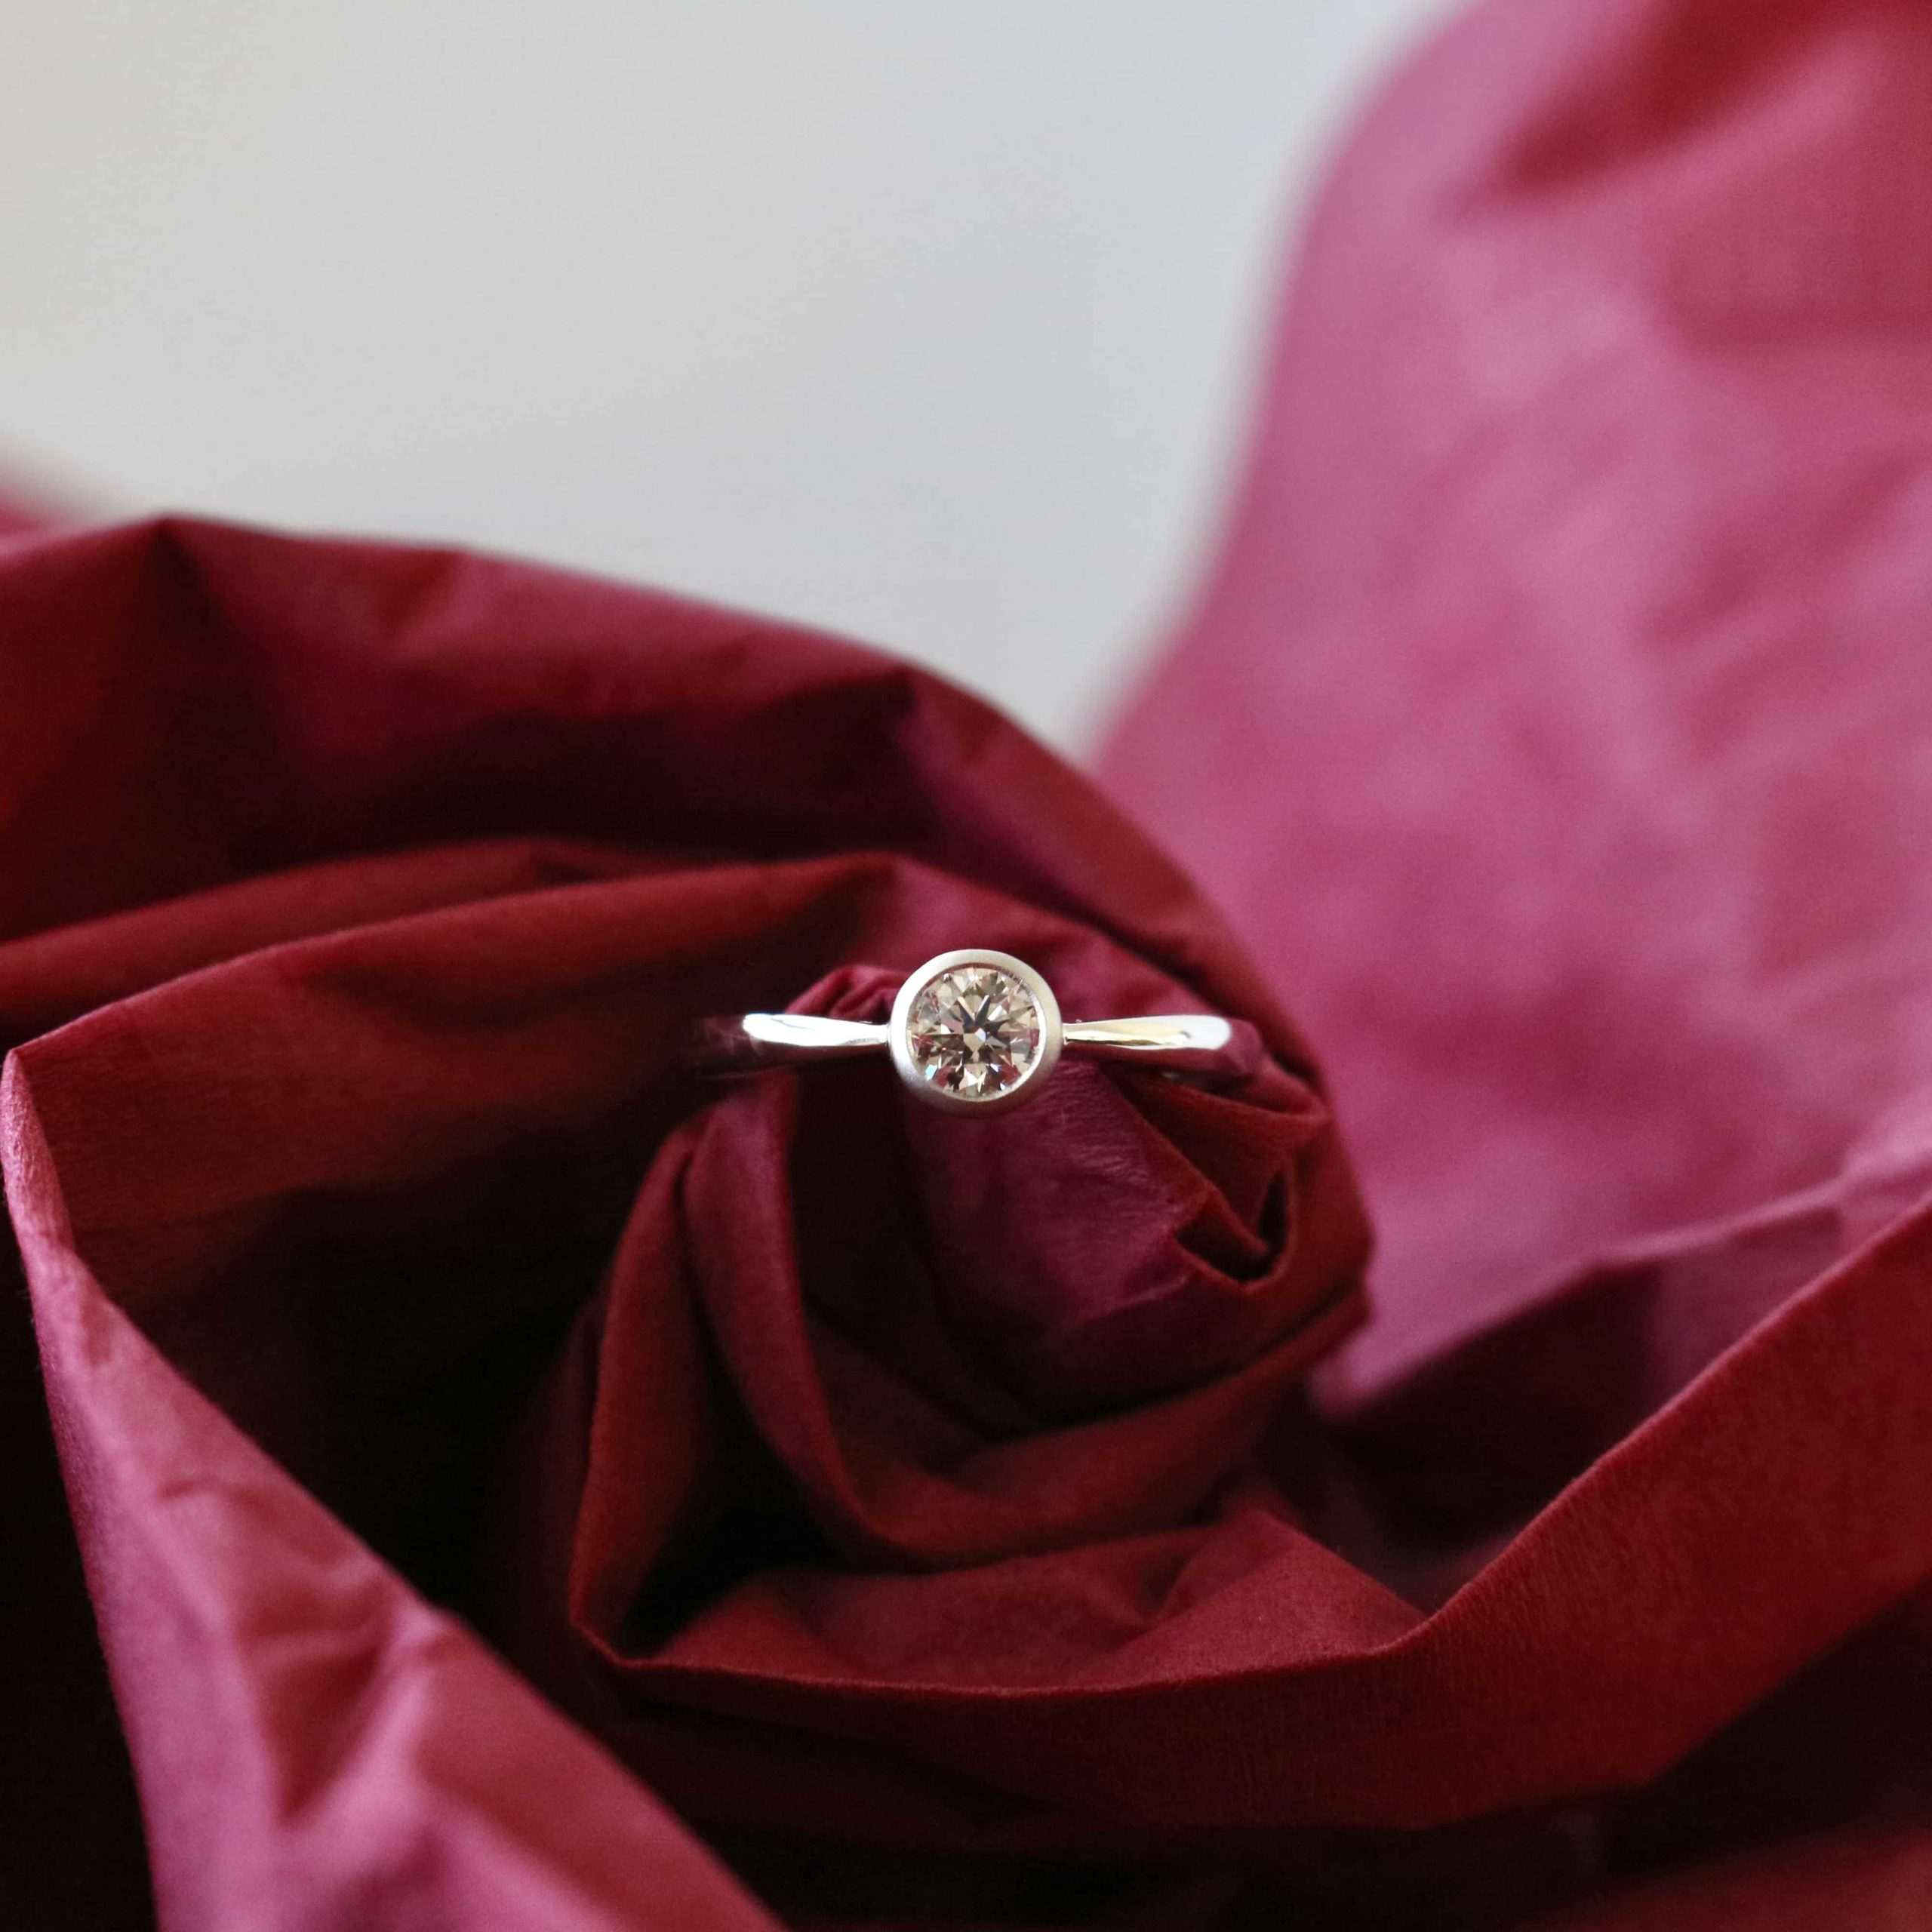 愛らしい覆輪が魅力的な婚約指輪